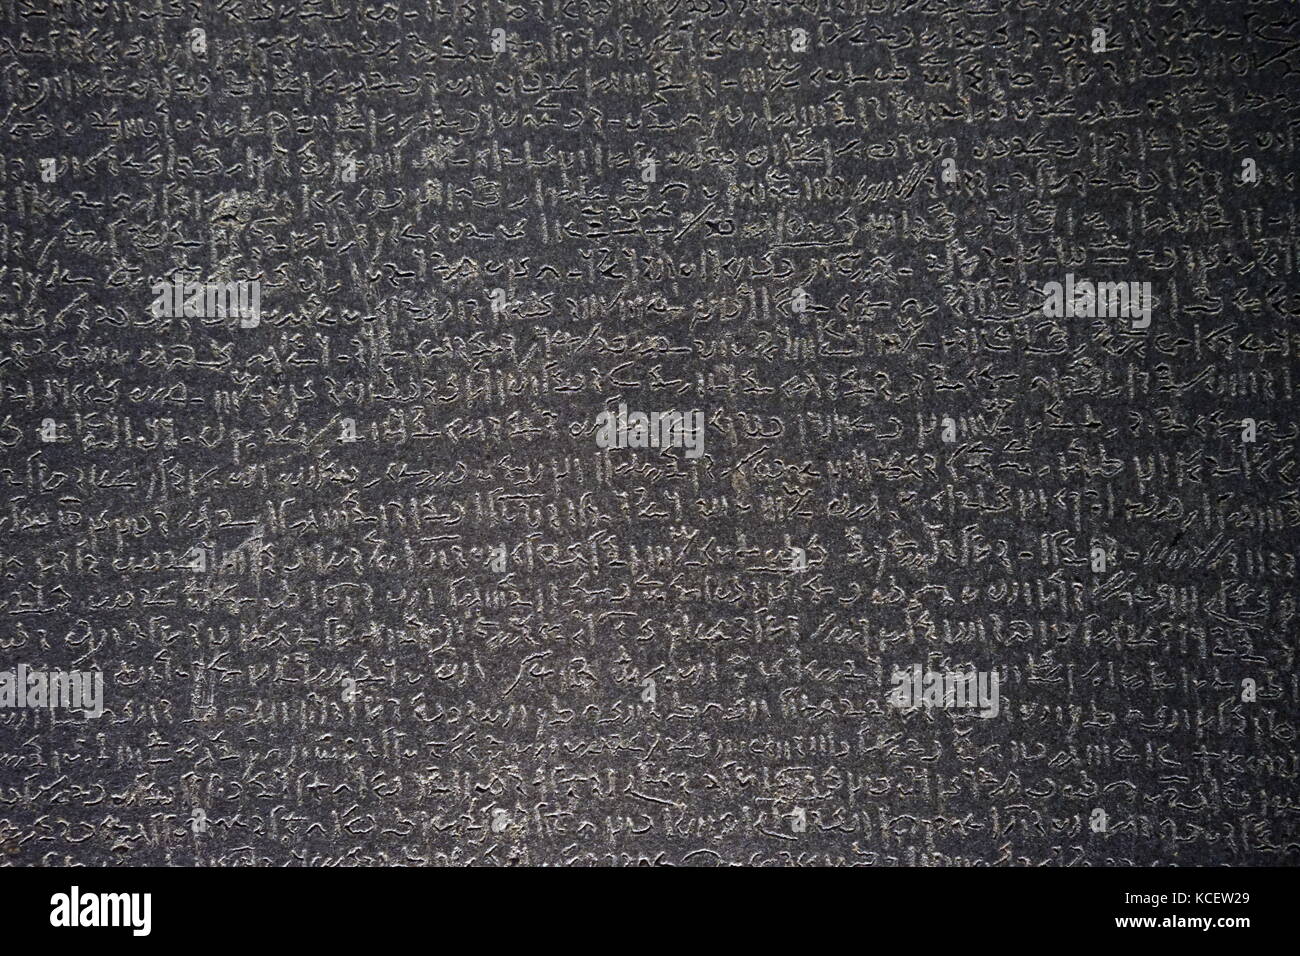 La Rosetta Stone è una roccia di stele, scoperto nel 1799, inscritte con un decreto emesso a Memphis, in Egitto, nel 196 A.C. in nome del re Tolomeo V. Il decreto appare in tre script:, la porzione mediana mostrato qui, è Demotic script Foto Stock